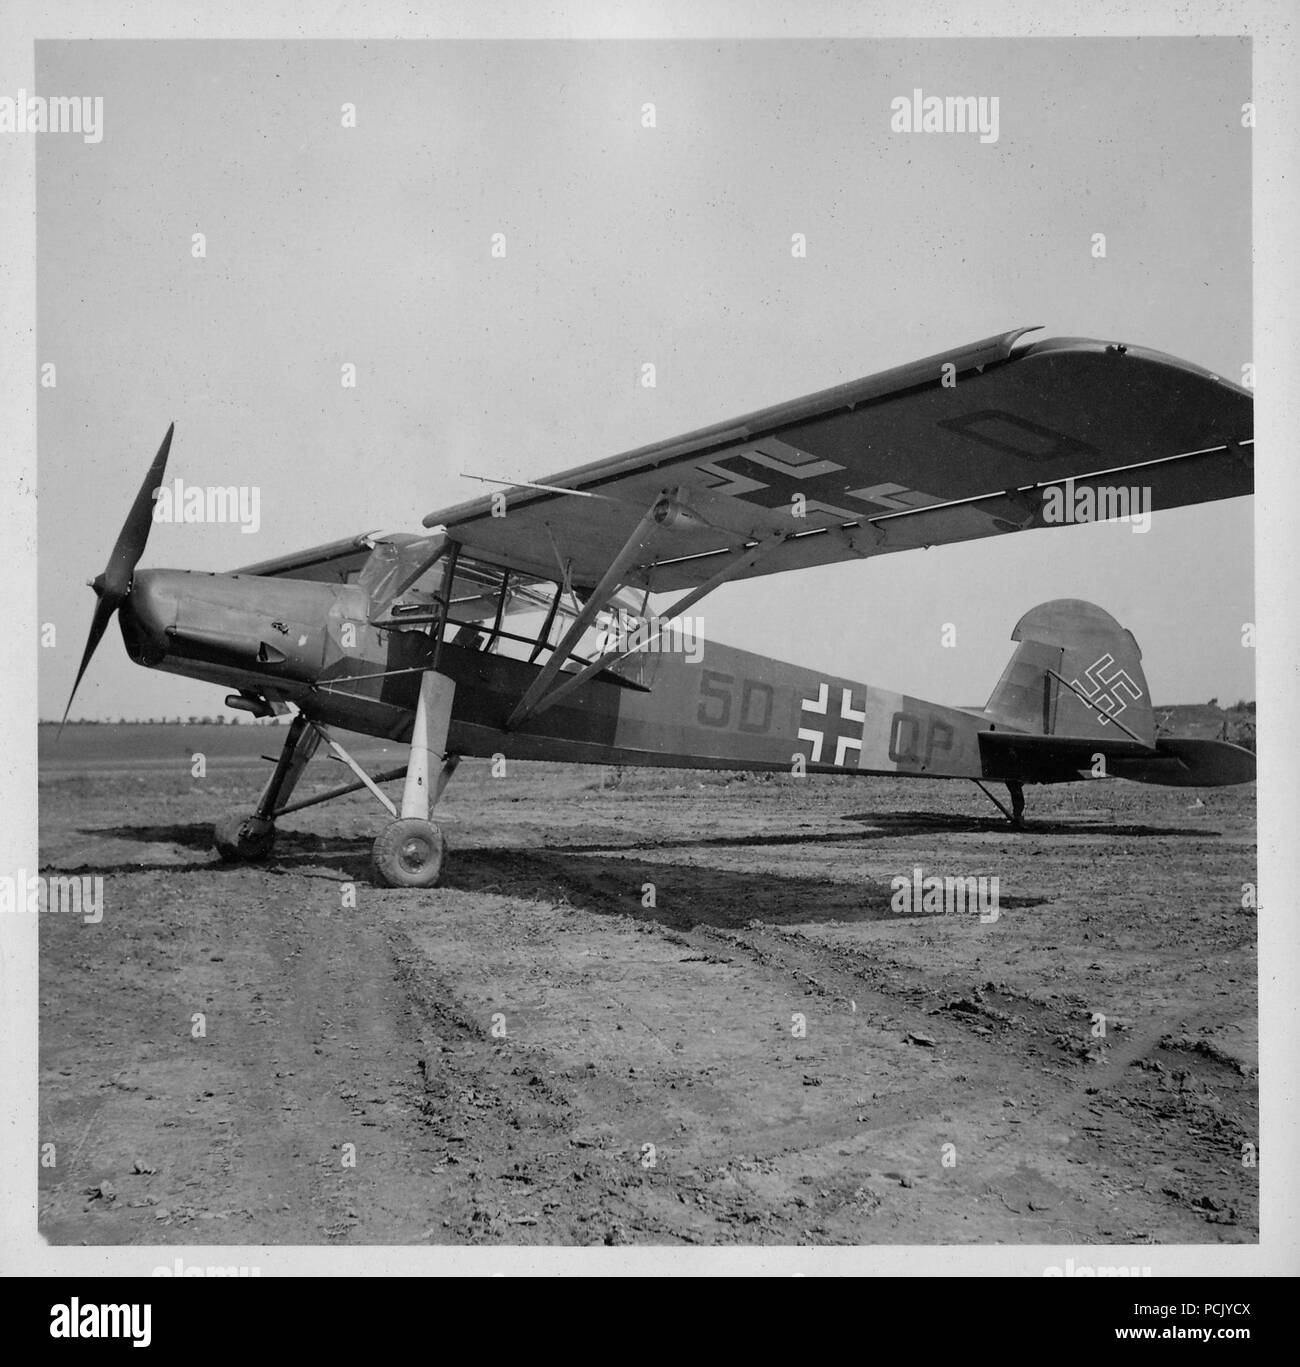 Image from a photo album relating to II. Gruppe, Jagdgeschwader 3: A Fiesler Fi156 Storch liaison/spotter aircraft of of Aufklärungsgruppe 31. Stock Photo